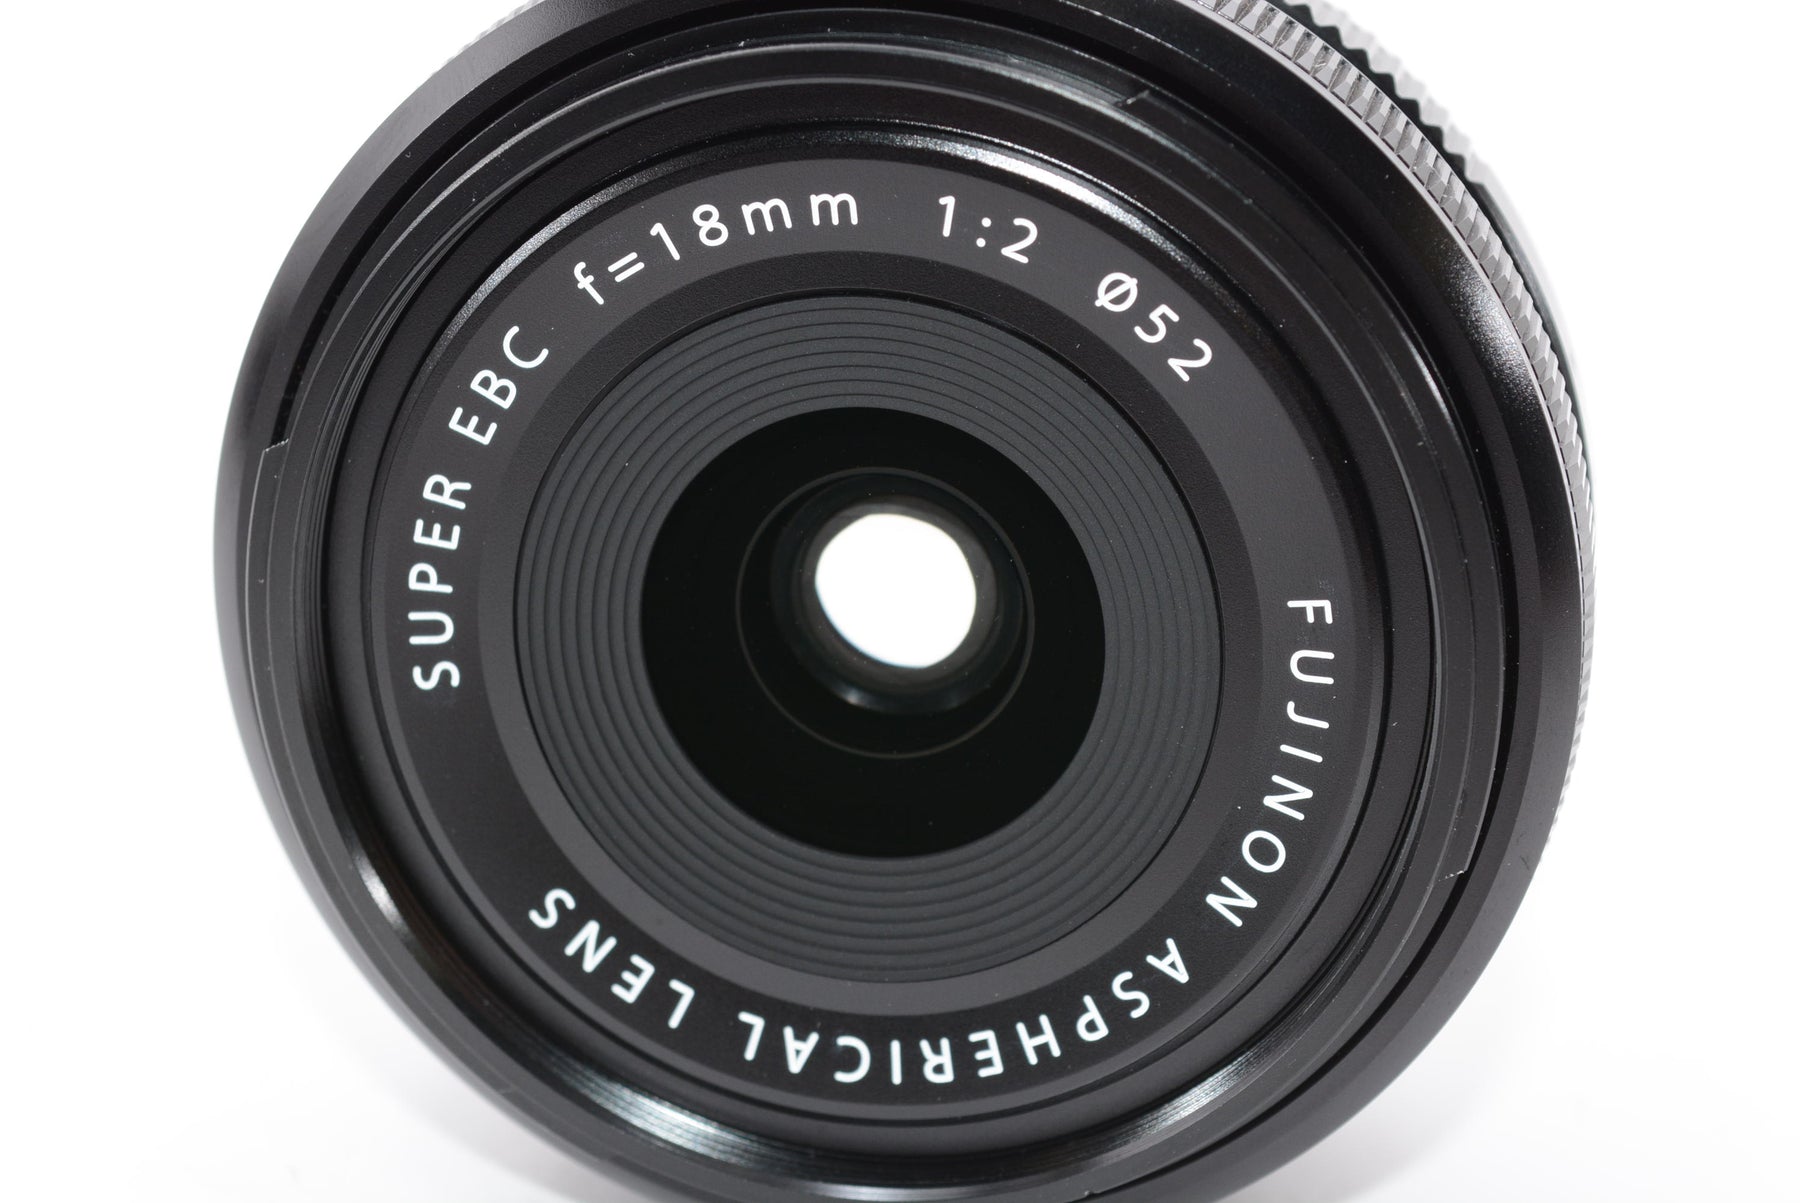 【外観特上級】FUJIFILM 単焦点広角レンズ XF18mmF2 R